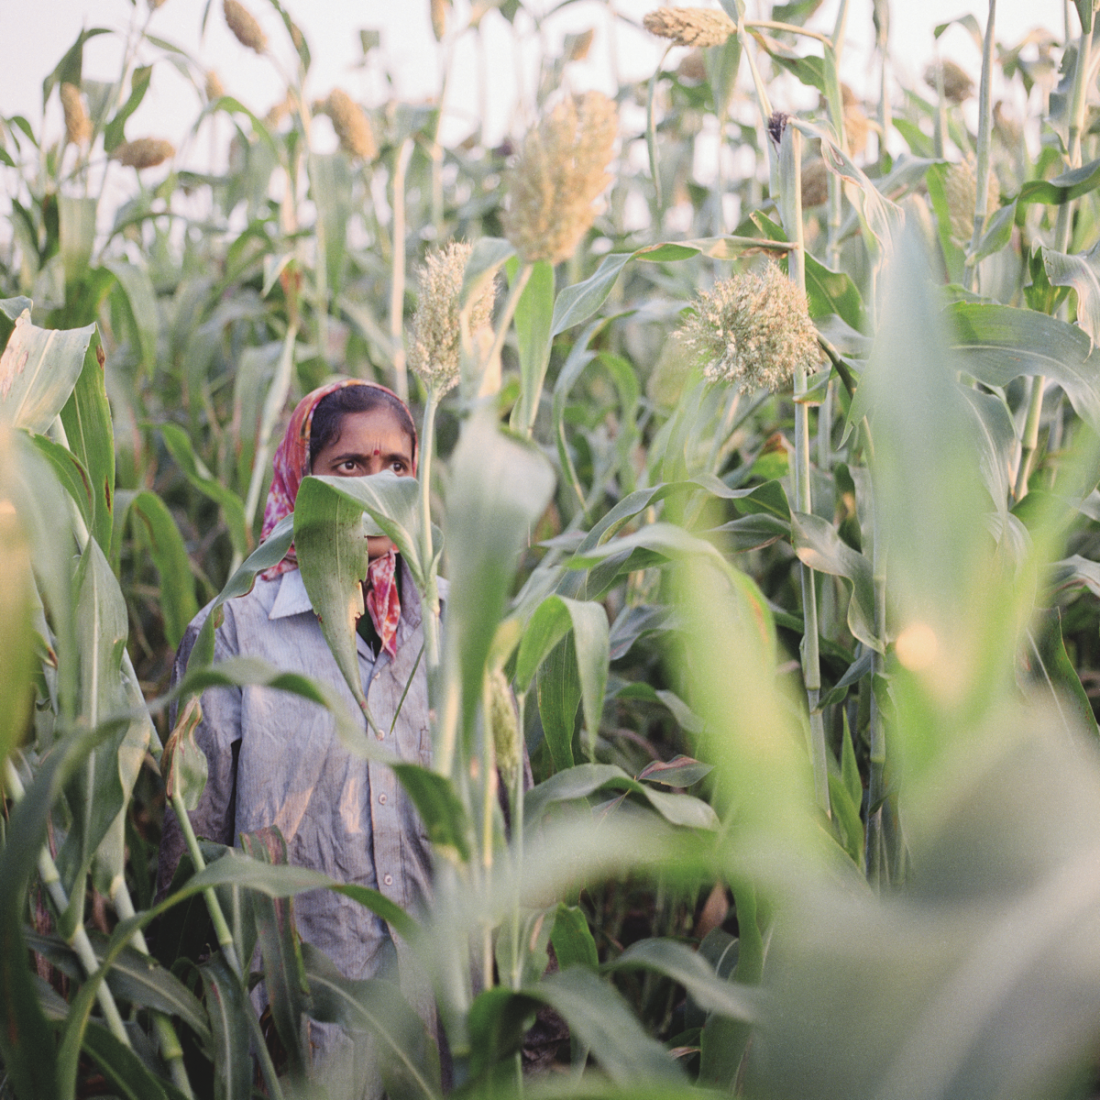 Nipani, India. Tobacco labourer Dipali Lohar in a mixed field with bidi tobacco and sorgum. © Rocco Rorandelli